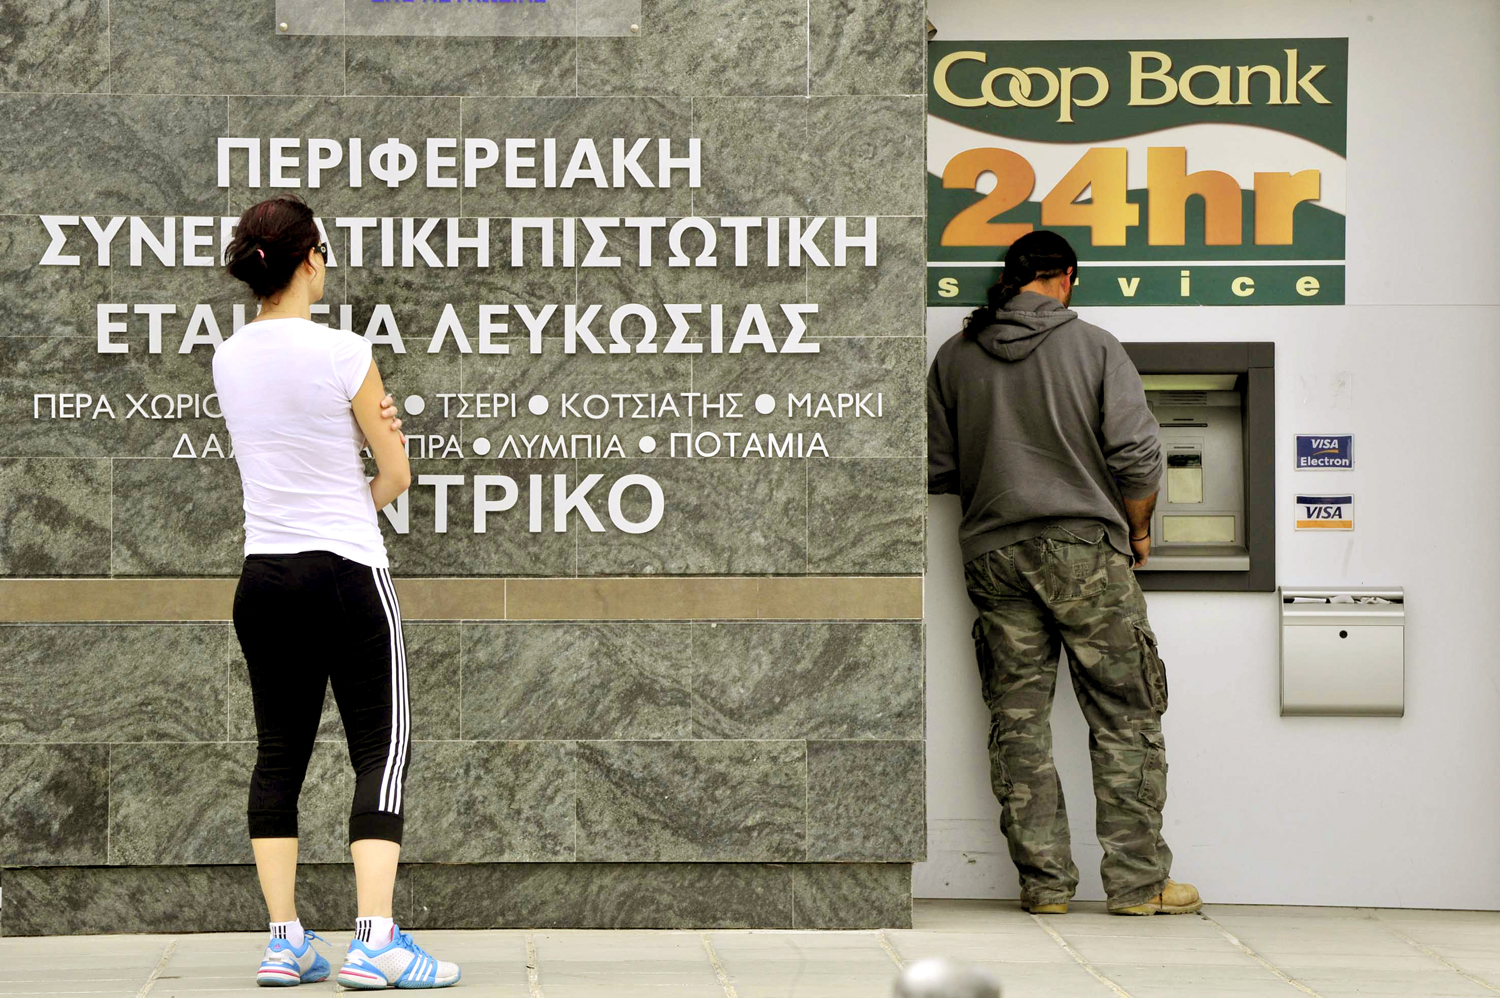 Ciprusiak veszik a pénzüket a bankból, mielőtt az állam veszi le a részét a számlatulajdonosok megtakarításaiból